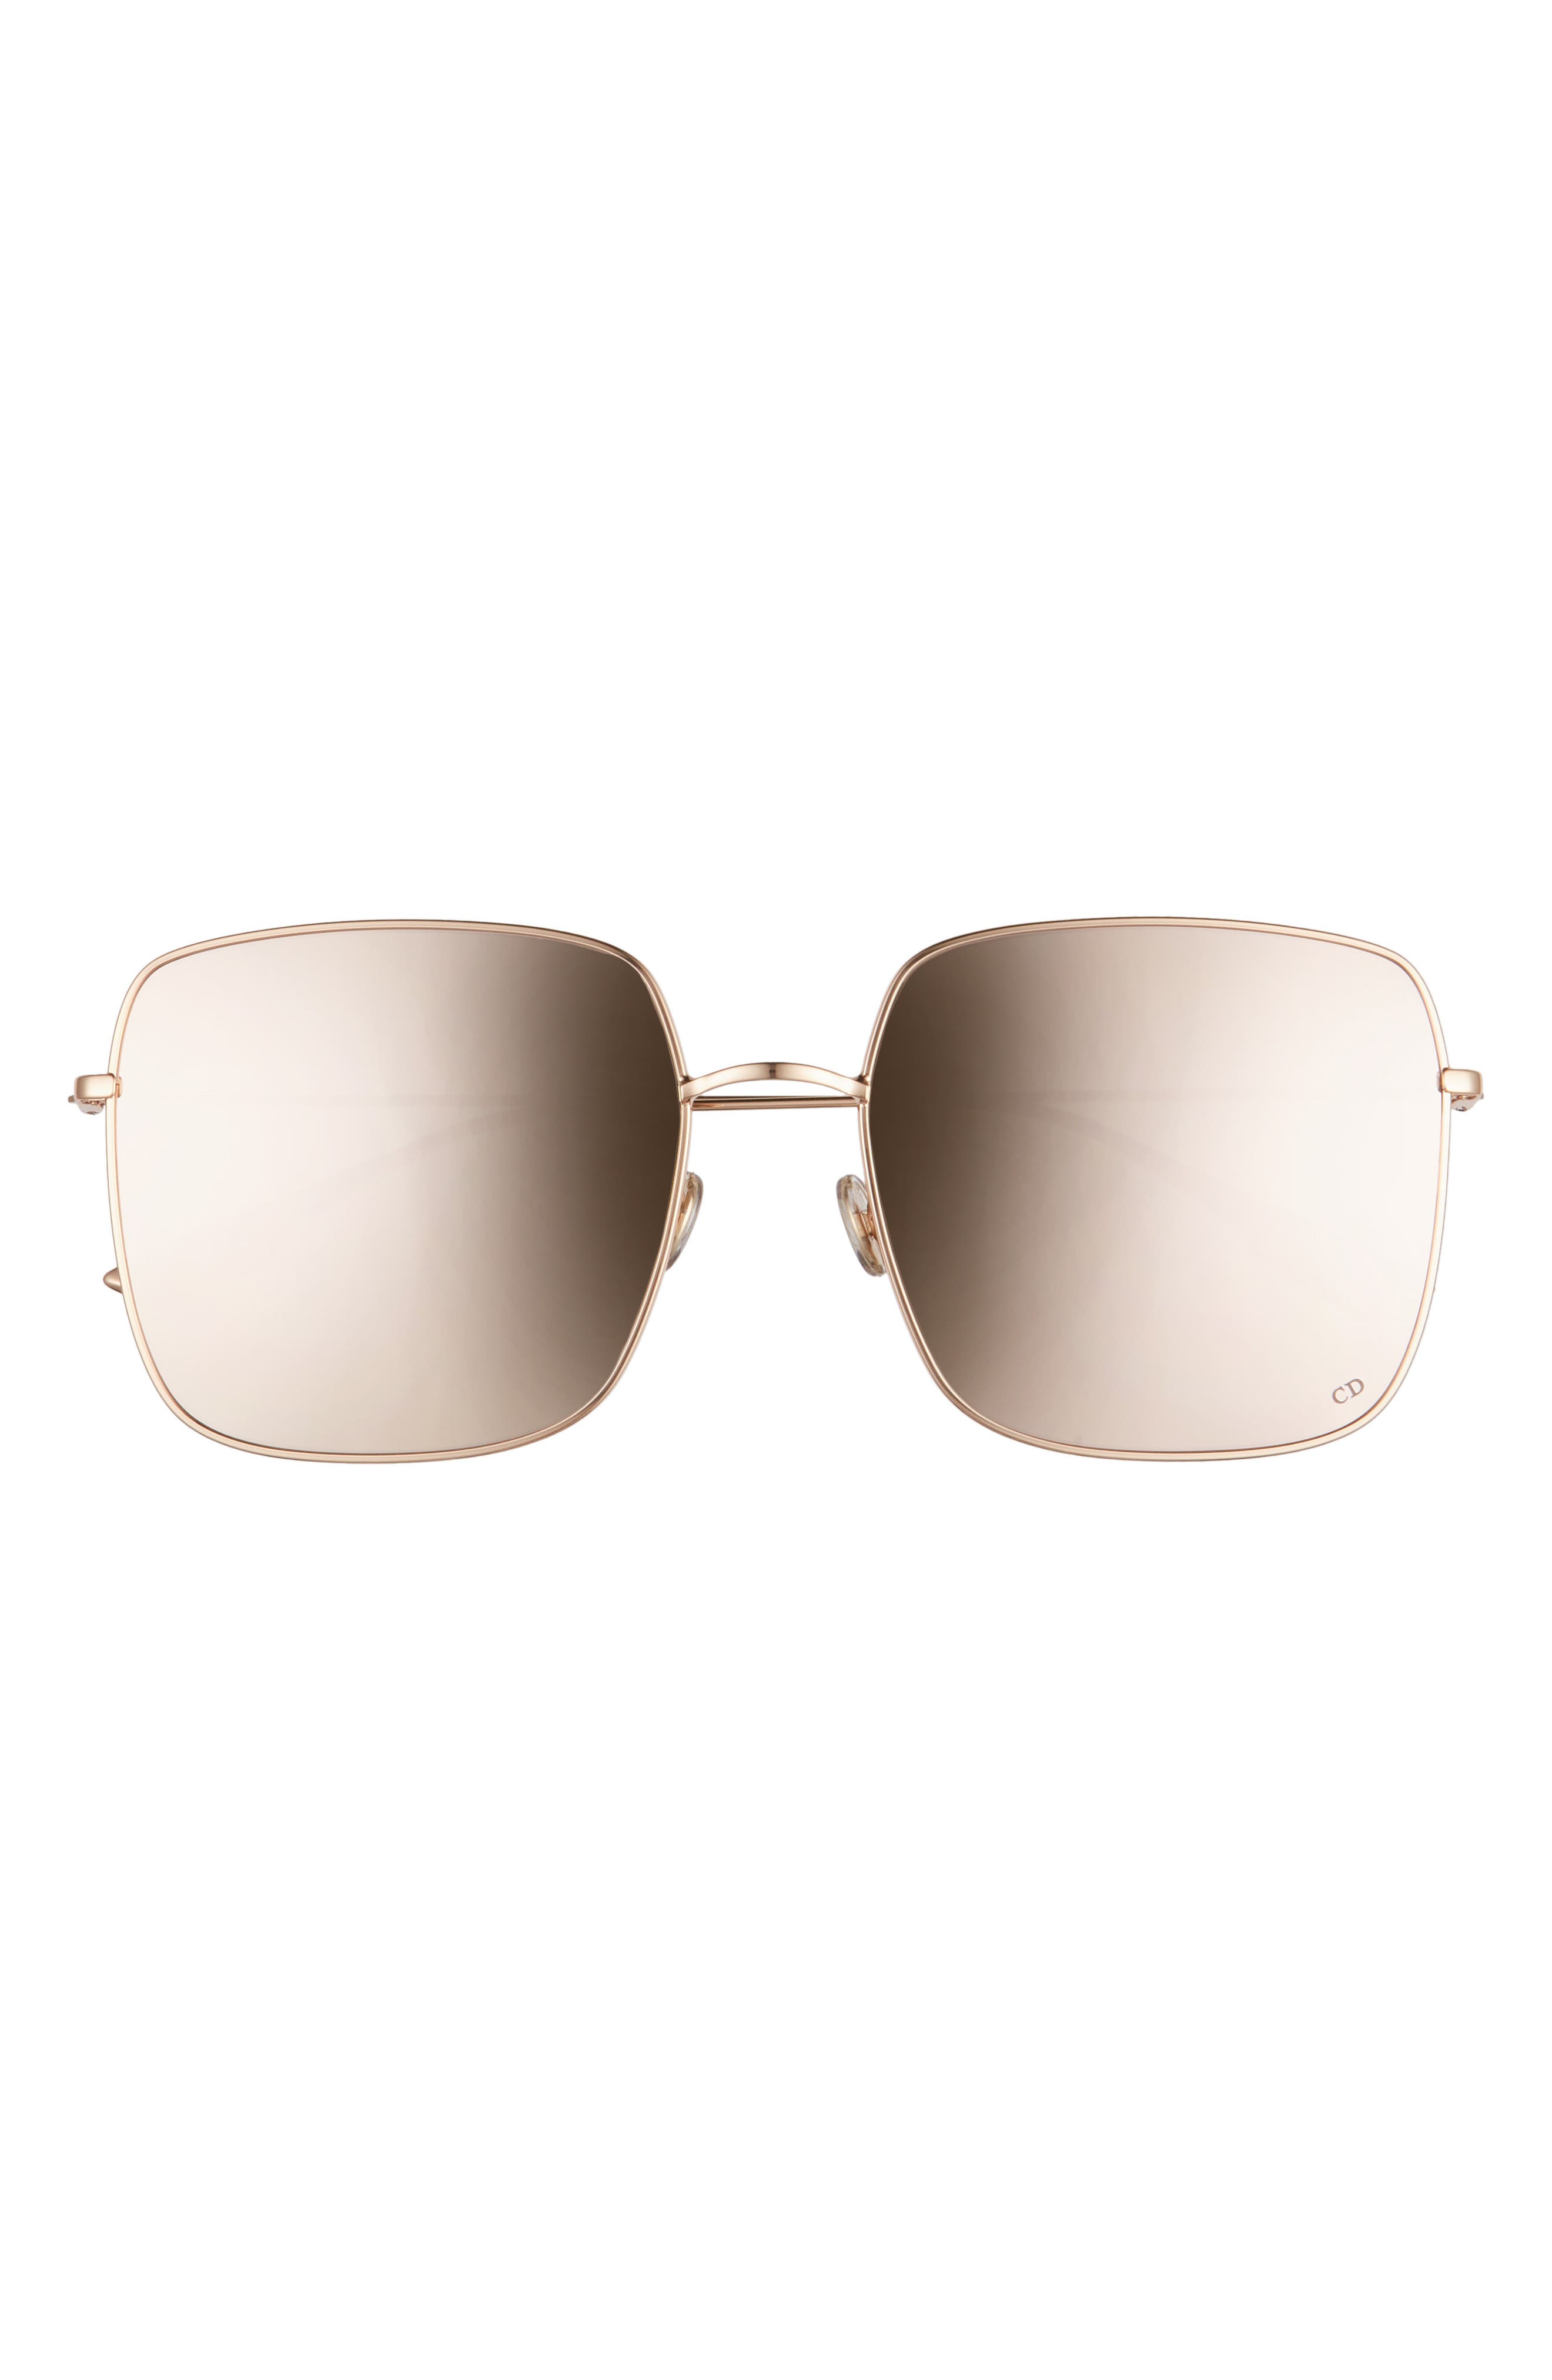 Dior | Stellaire 59mm Square Sunglasses 